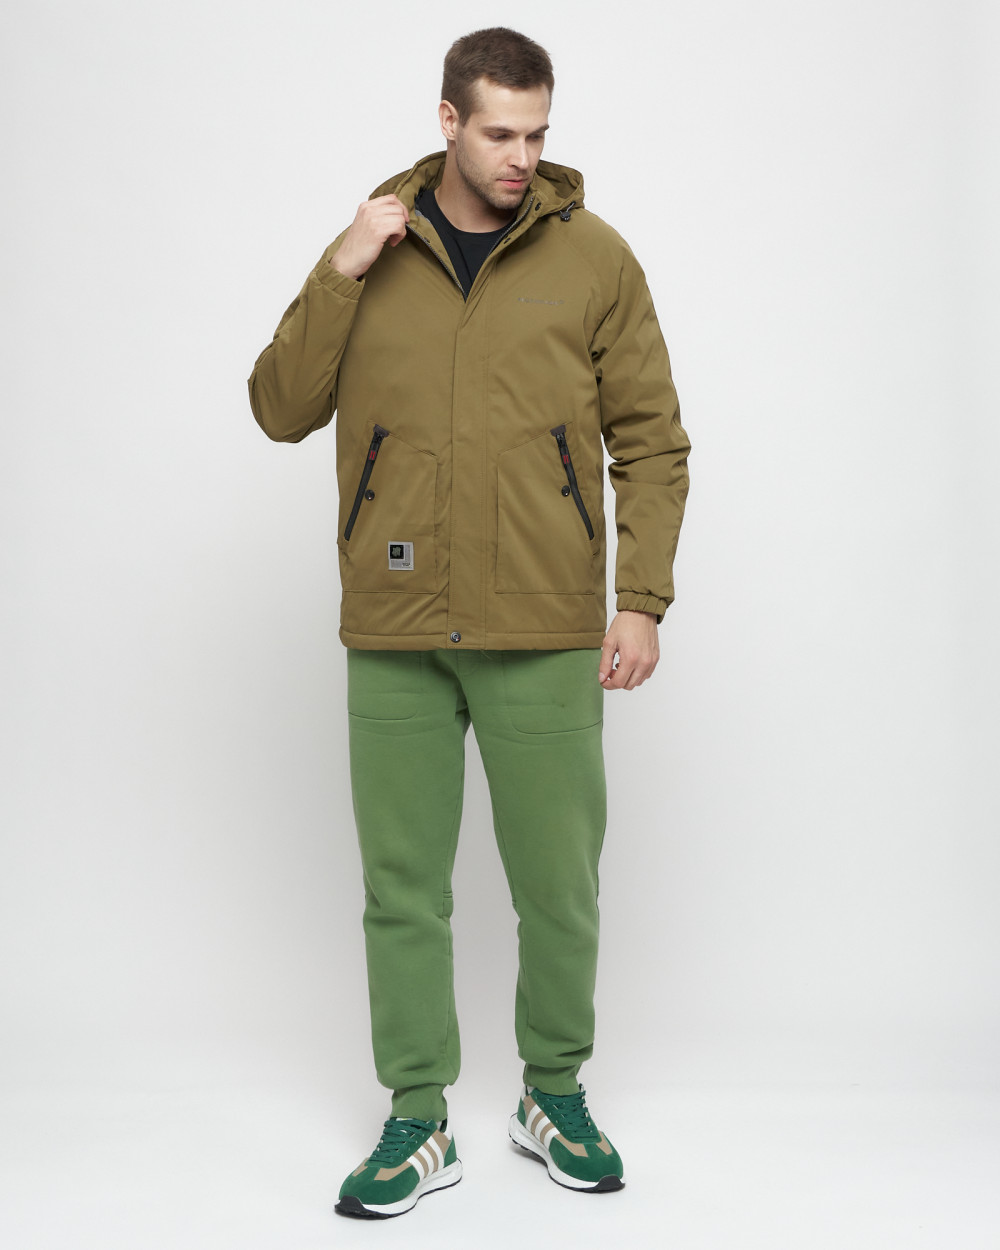 Купить куртку мужскую спортивную весеннюю оптом от производителя недорого в Москве 8598B 1